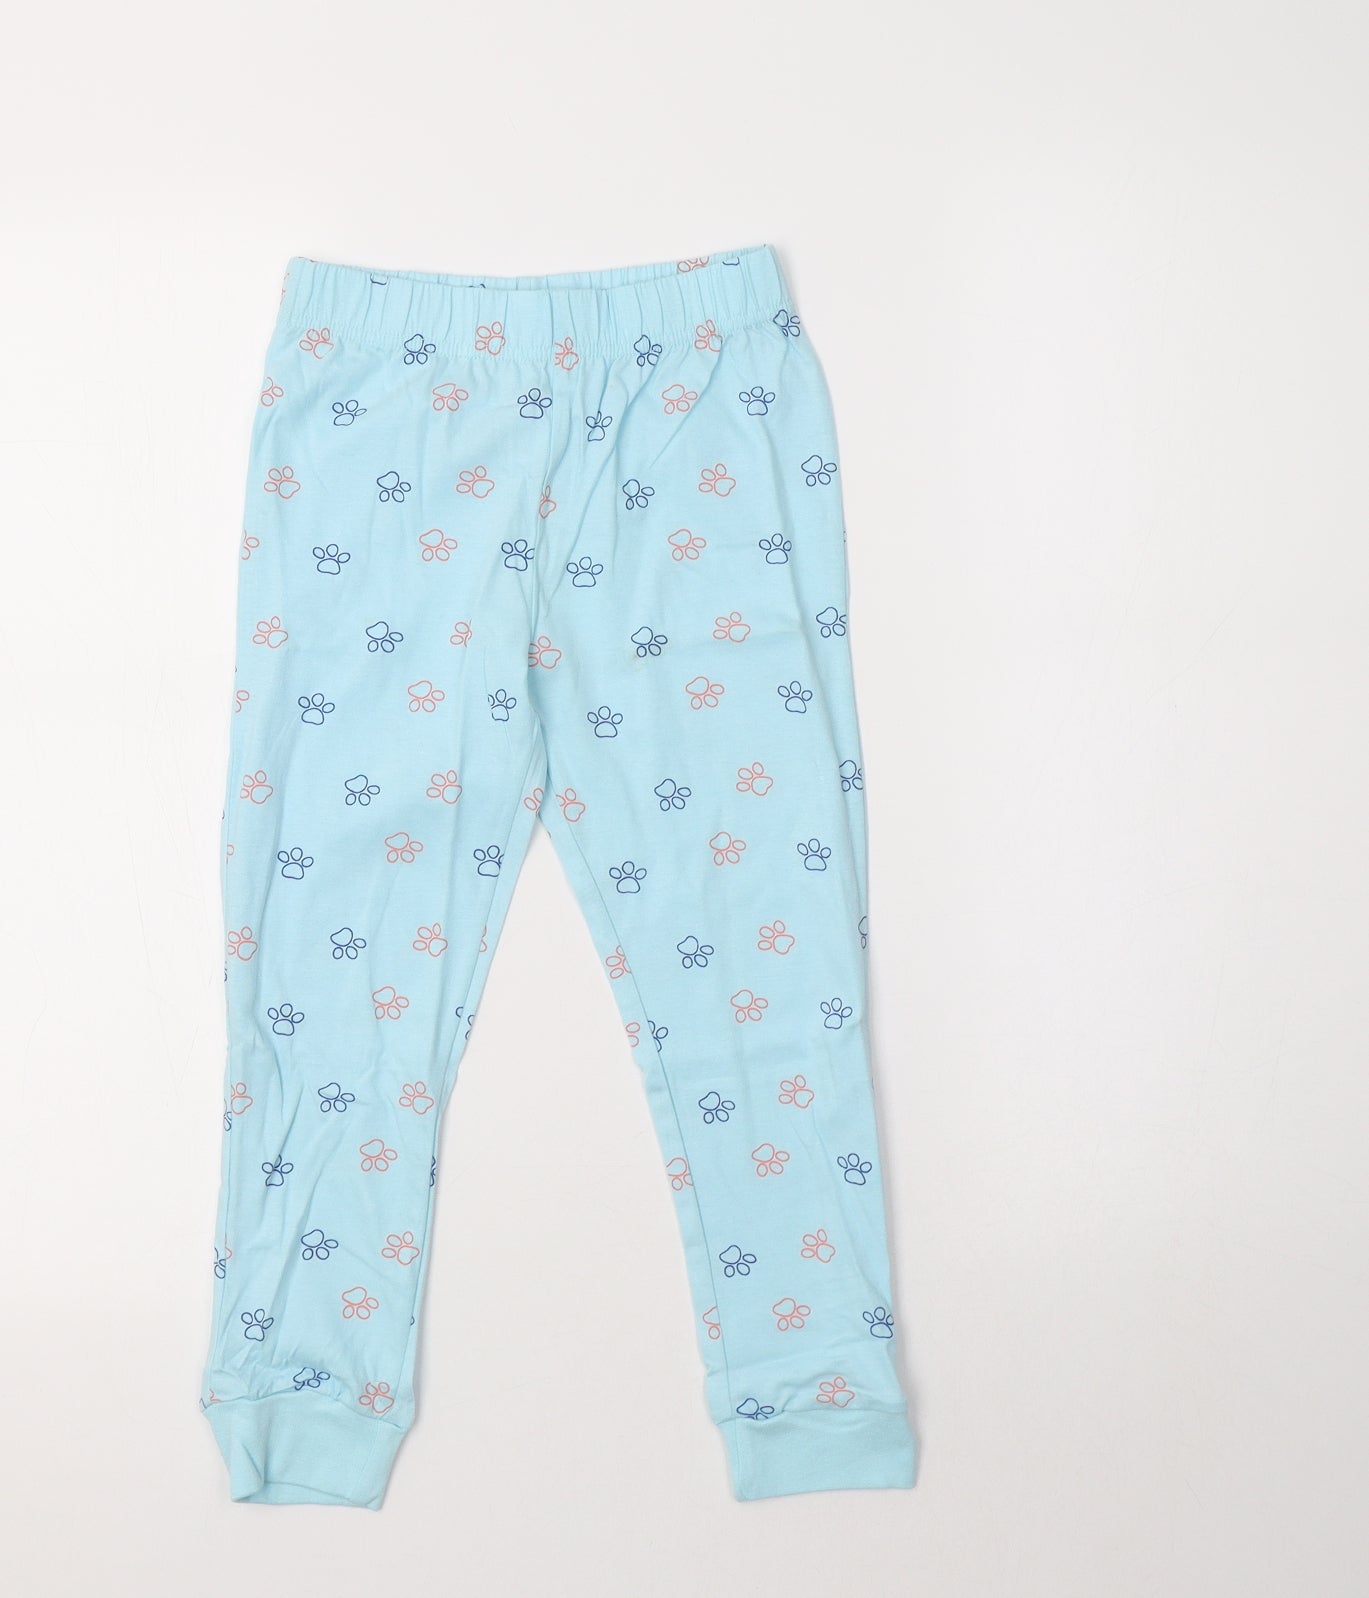 F&F Girls Blue  Cotton  Pyjama Pants Size 5-6 Years   - Paw Print